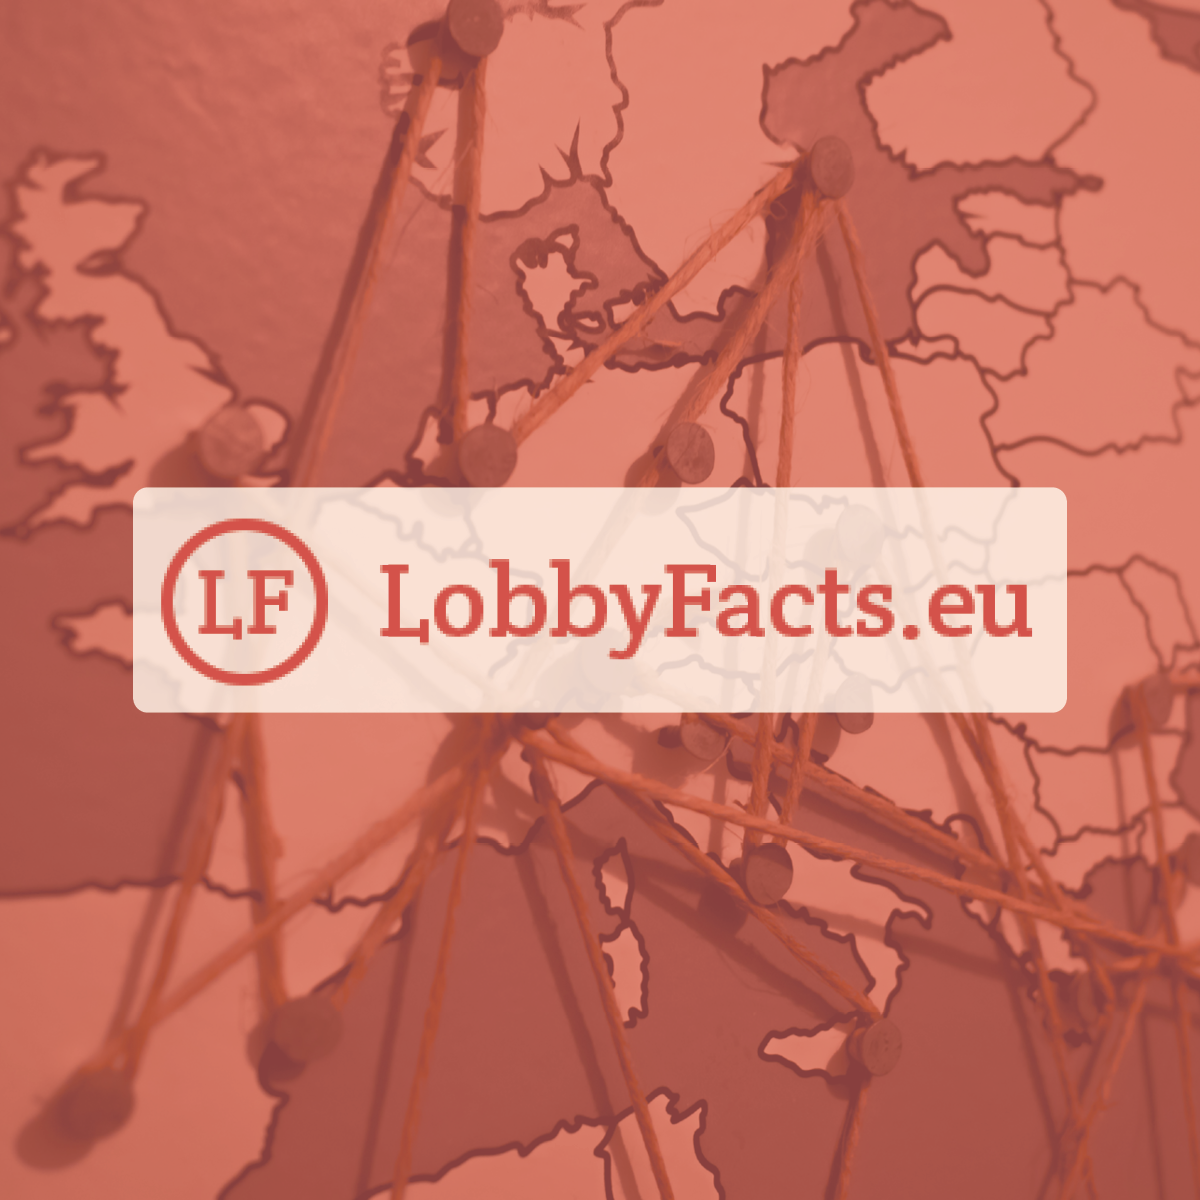 LobbyFacts.eu